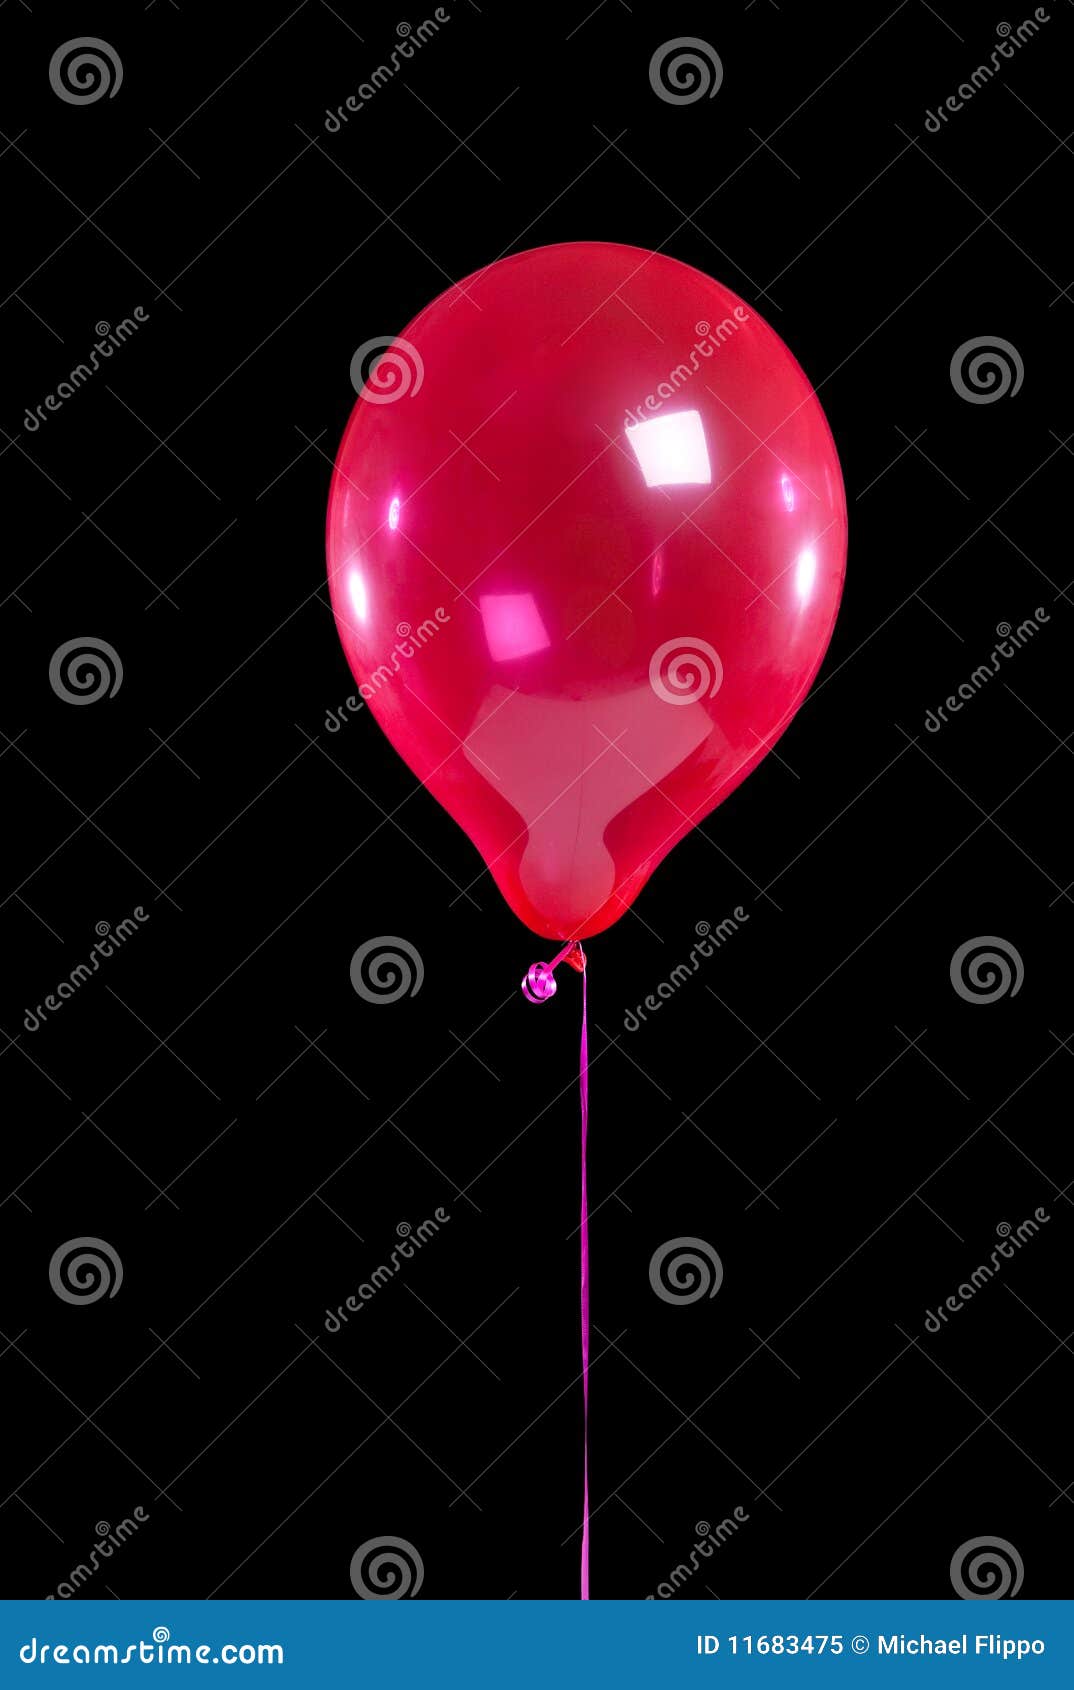 7,322 Photos de Ballon Noir Et Rouge - Photos de stock gratuites et libres  de droits de Dreamstime